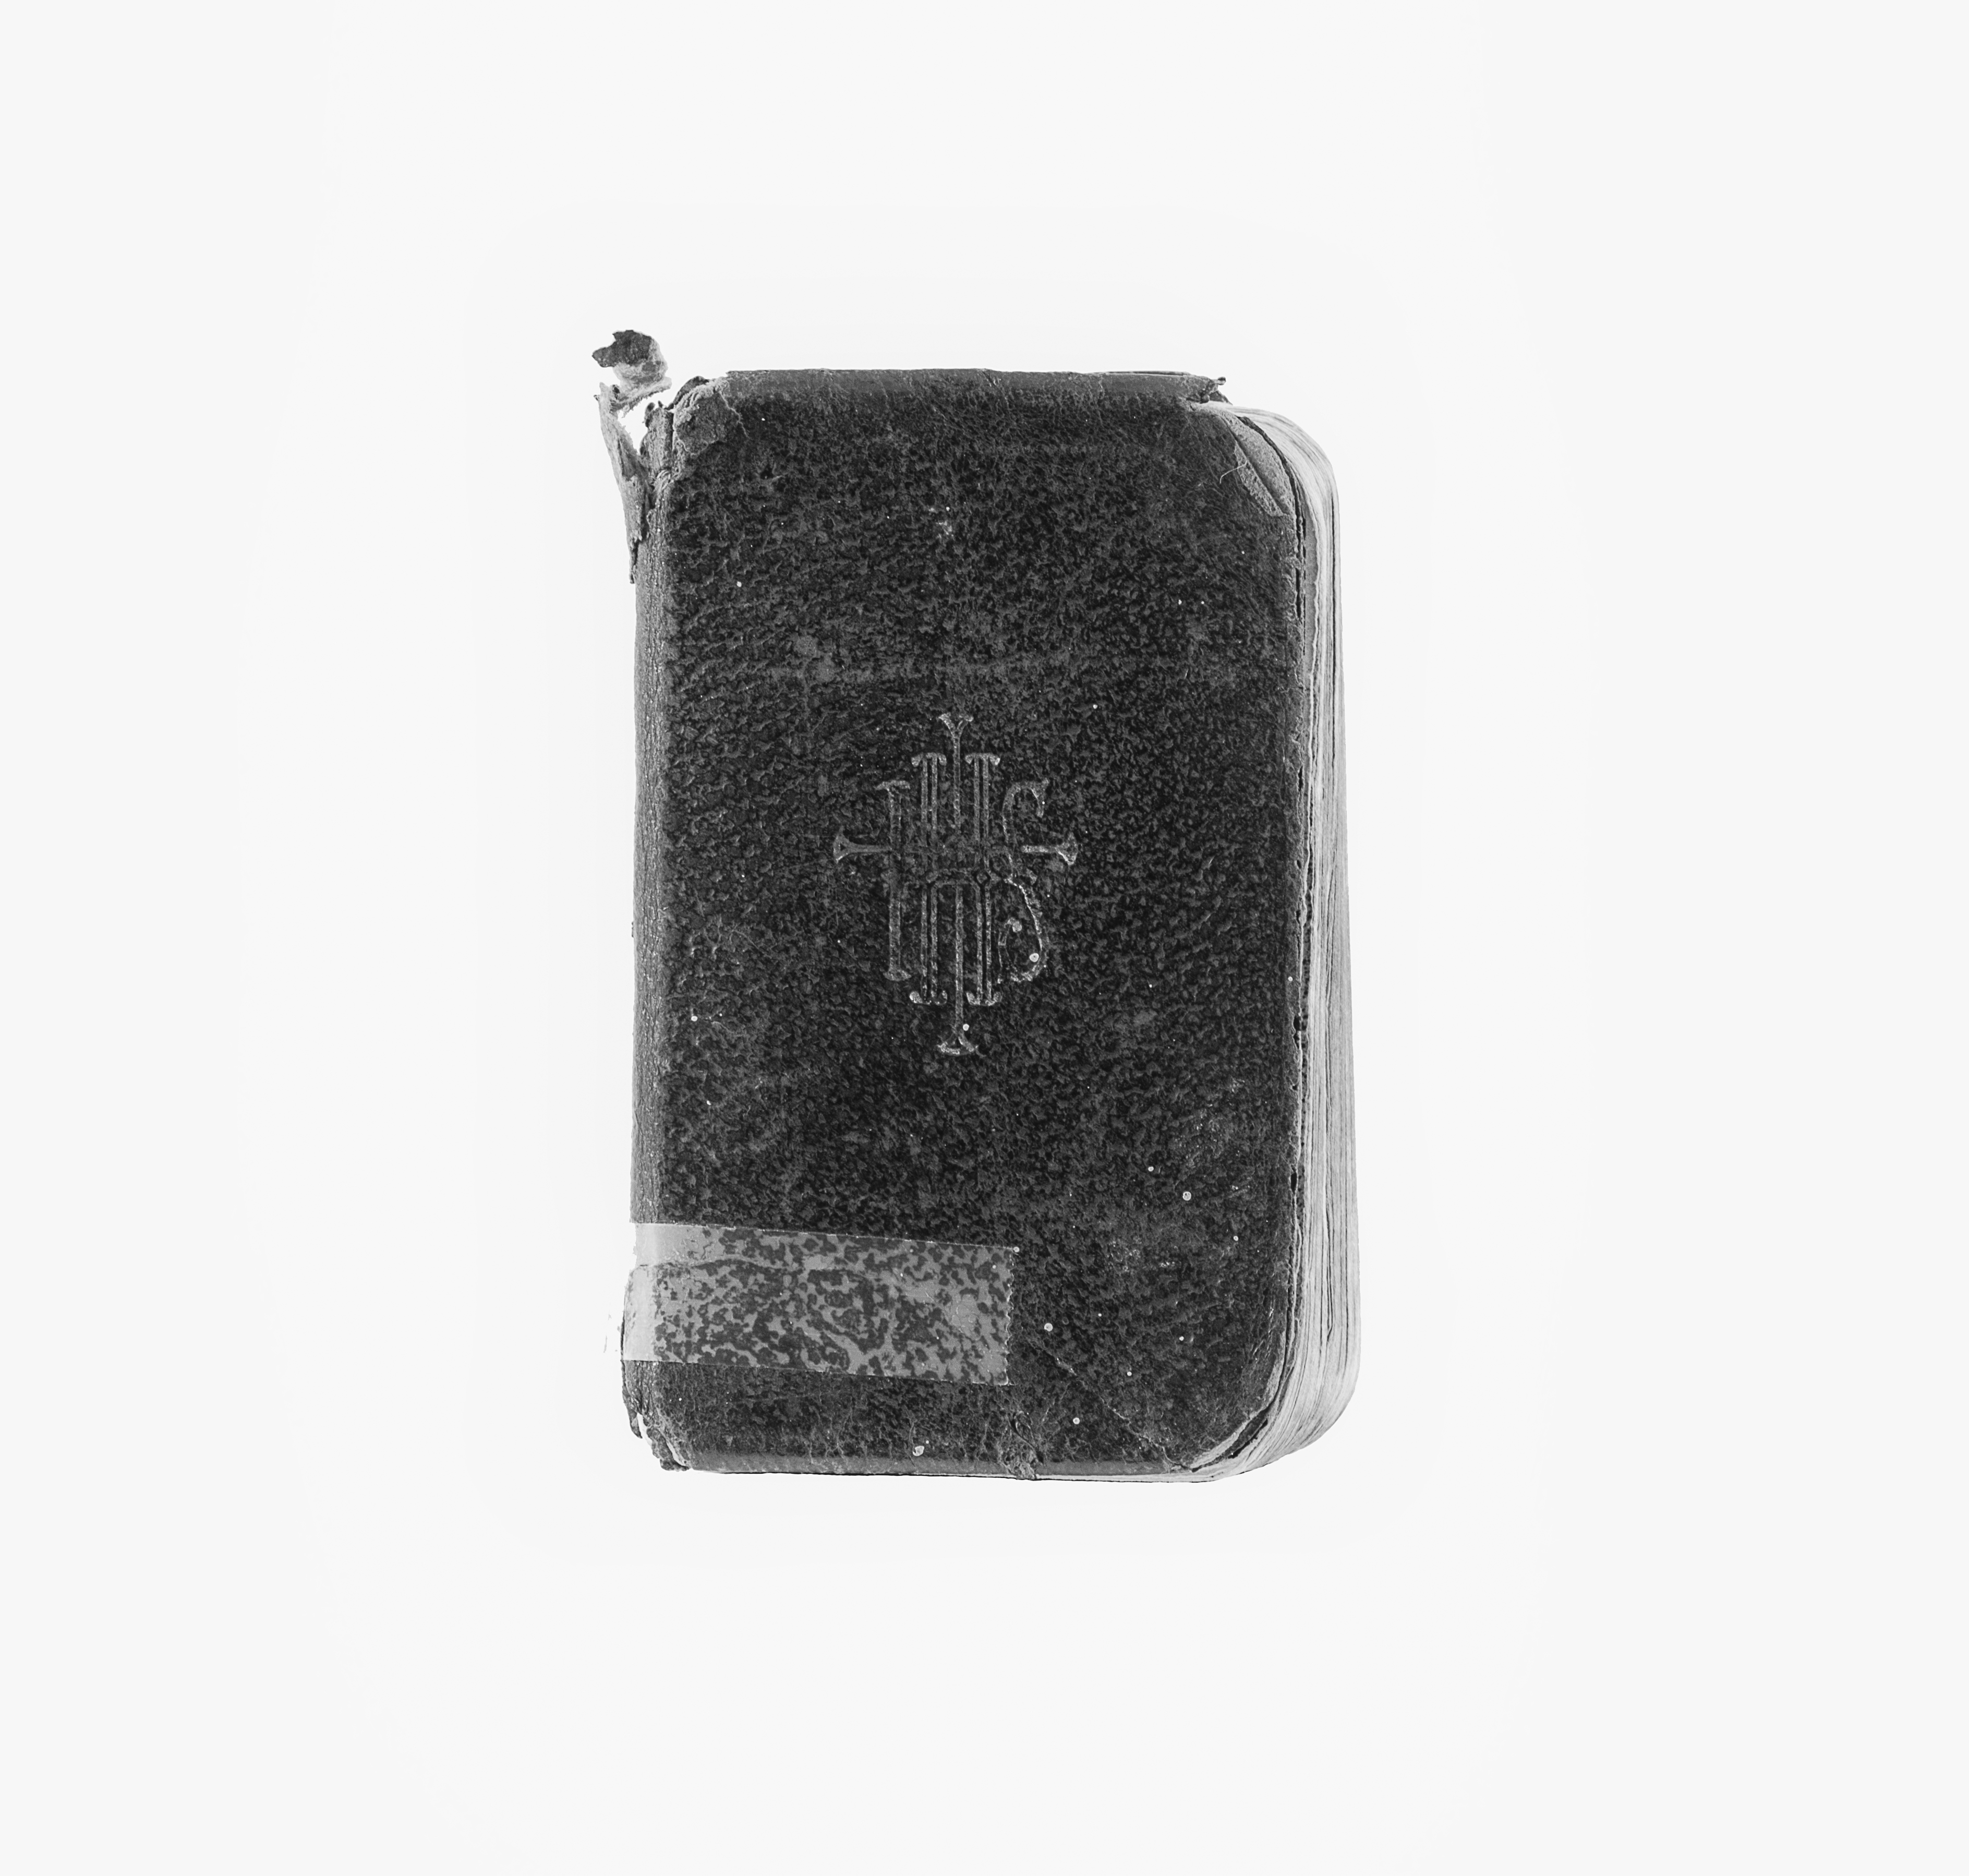 Photographie moderne en noir et blanc d’un livre de prières à la couverture noire et aux pages blanches. Sur la première de couverture est inscrit IHS.